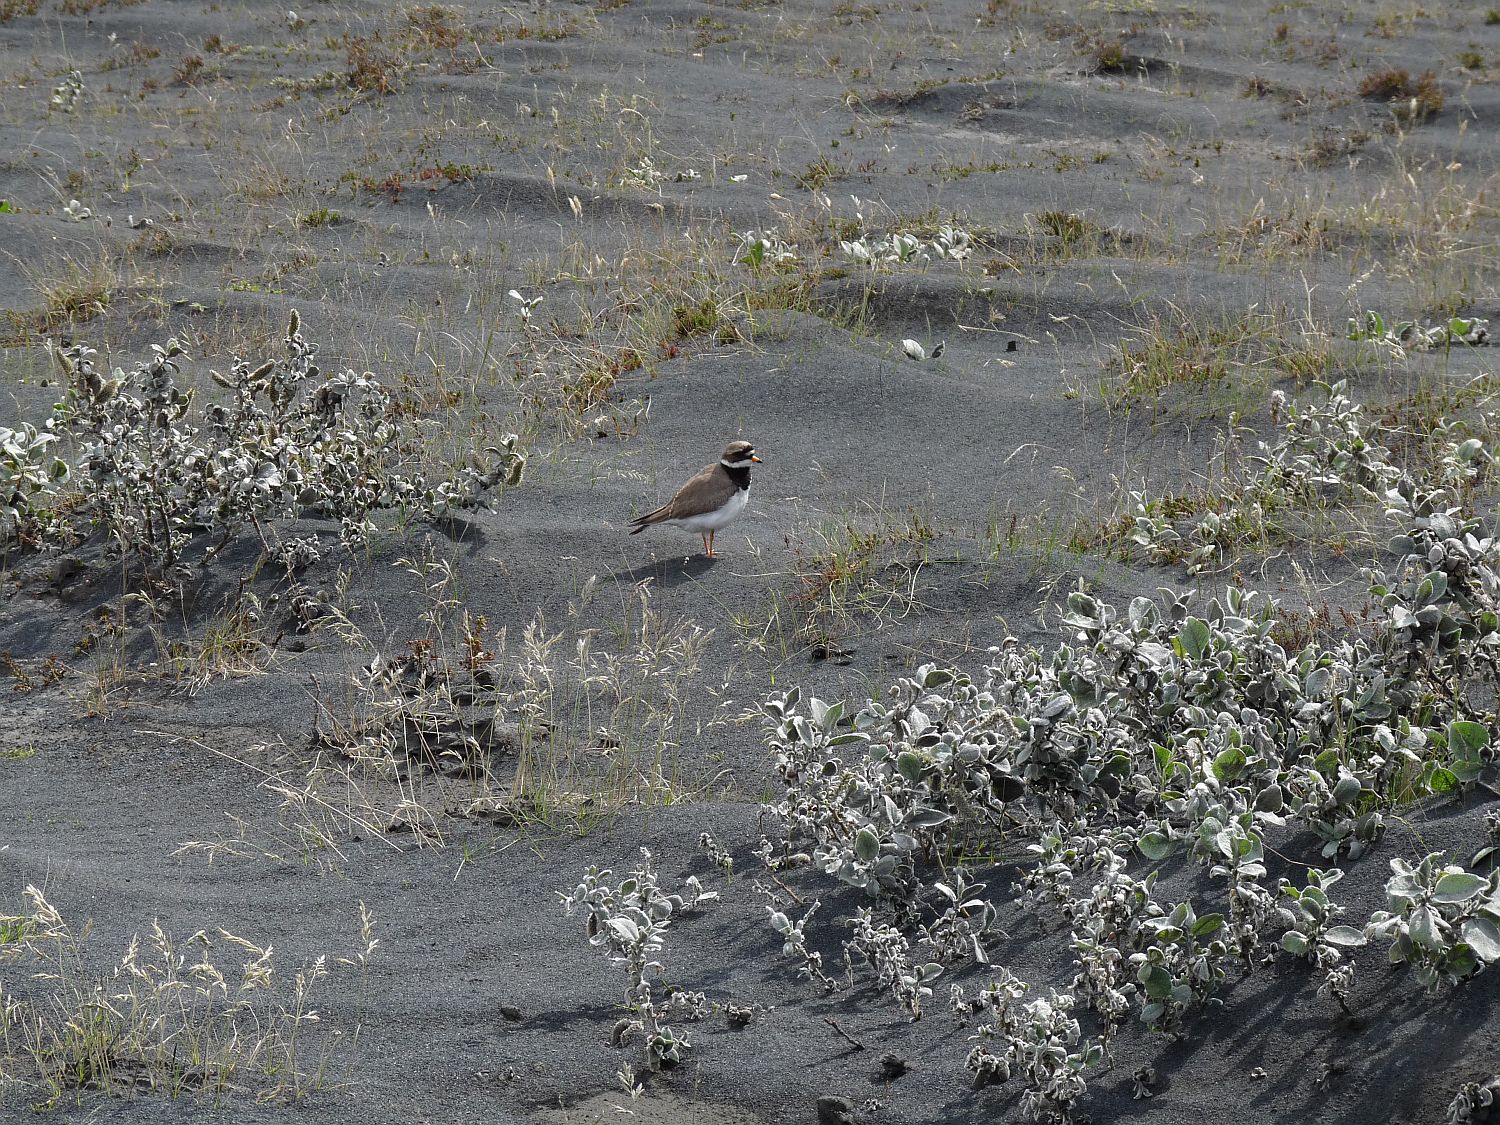 Little bird in volcanic ash photo